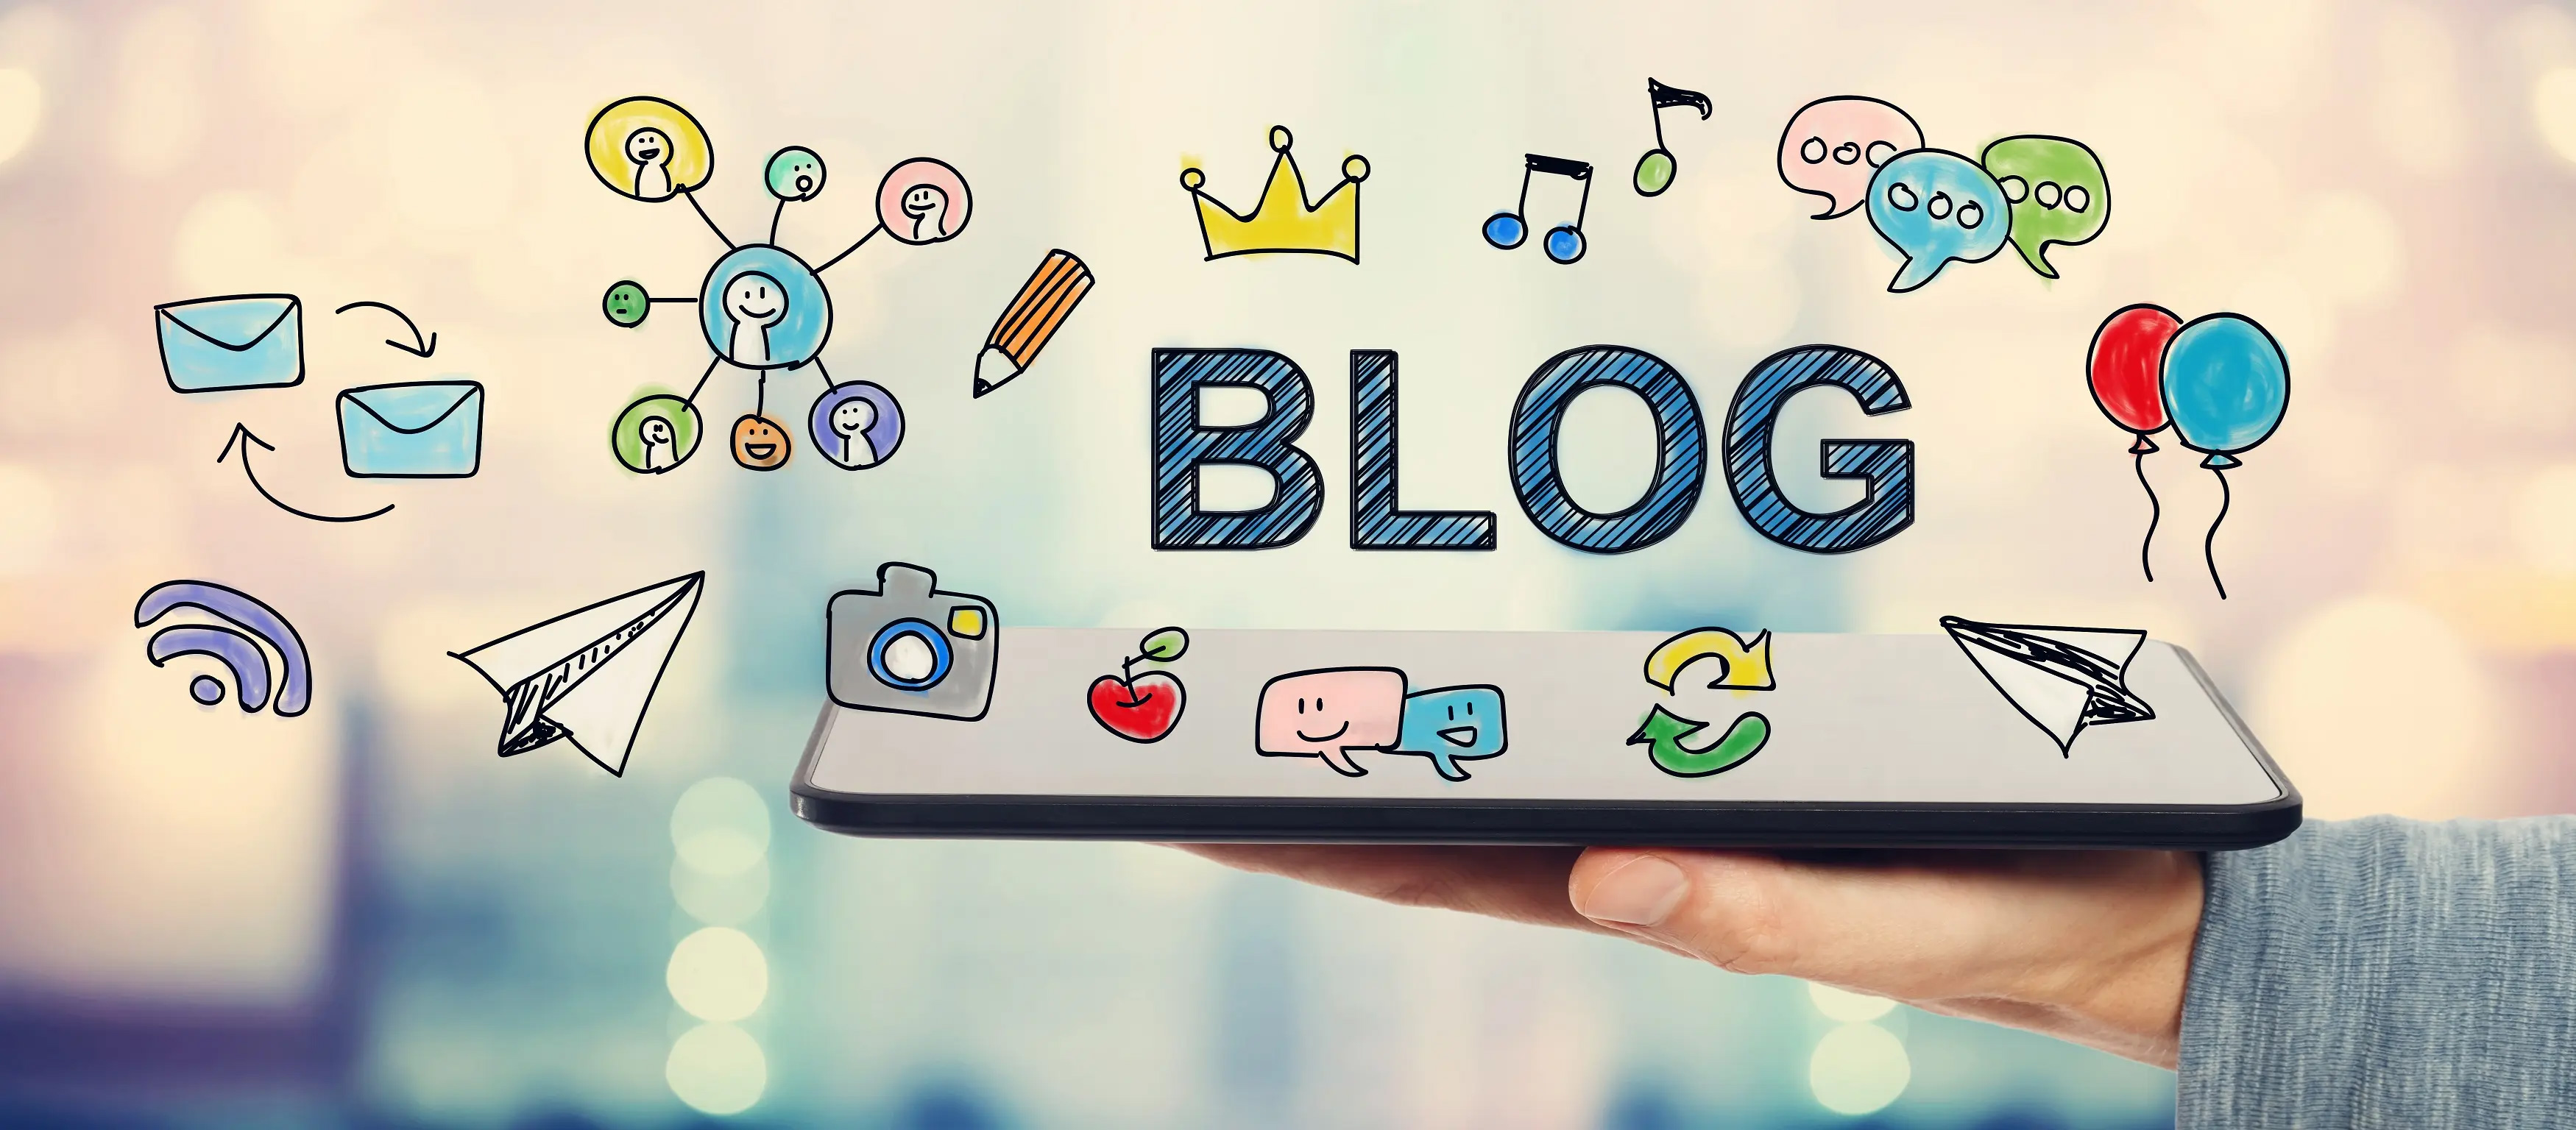 وبلاگ نویسی چیست و چه معایب و مزایایی دارد؟